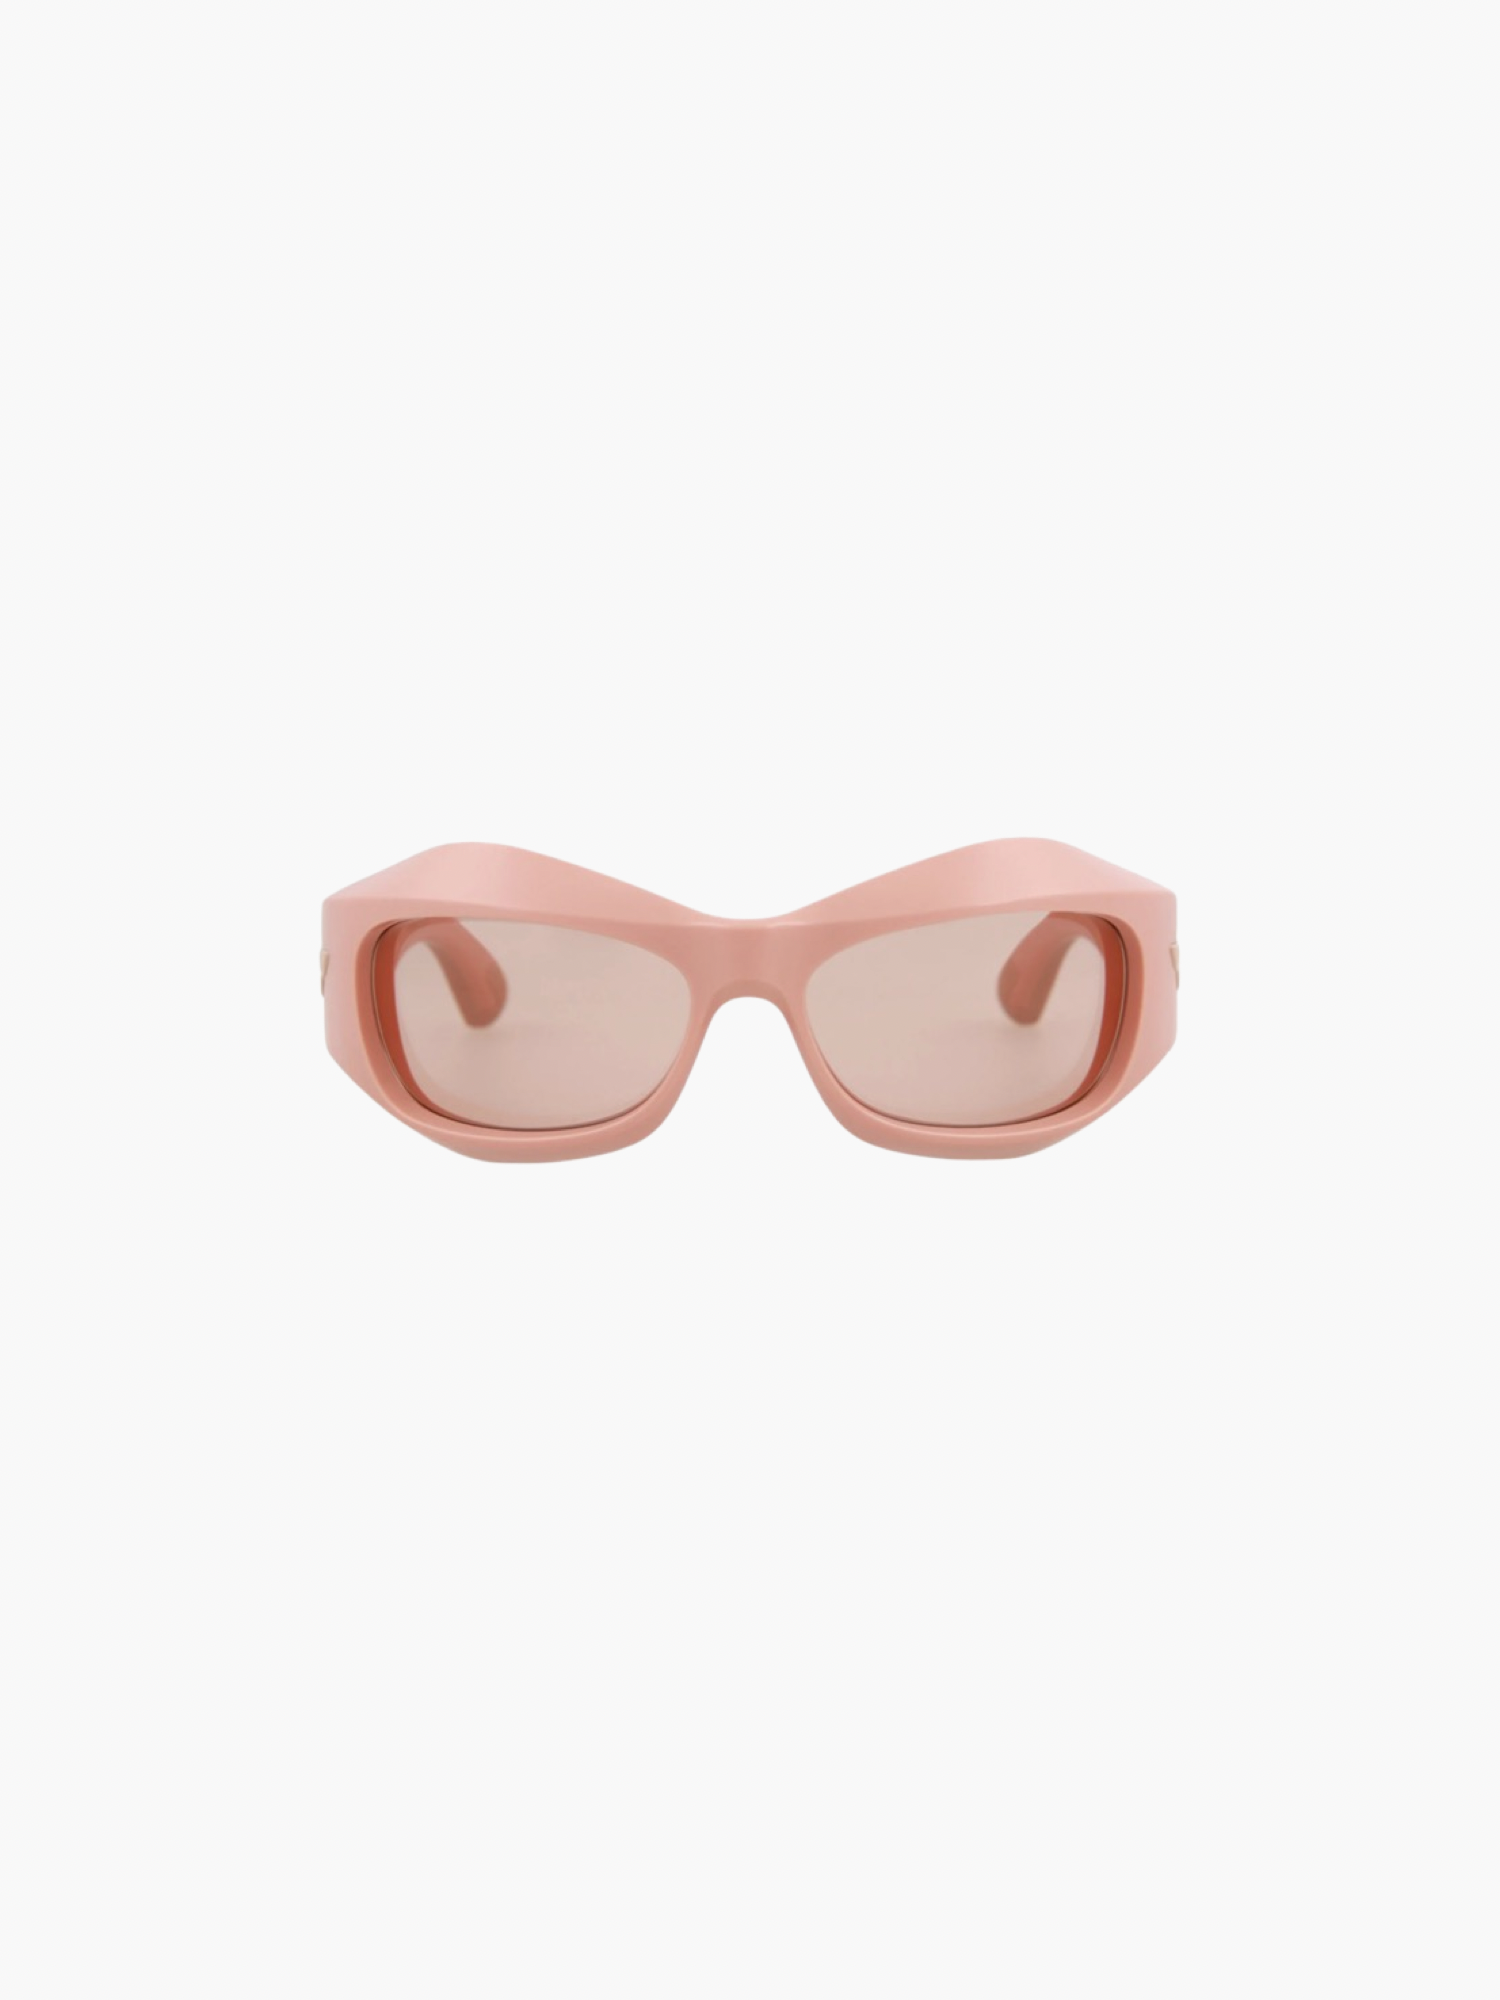 Bottega Veneta “Cyclone 11” Sunglasses in Brown